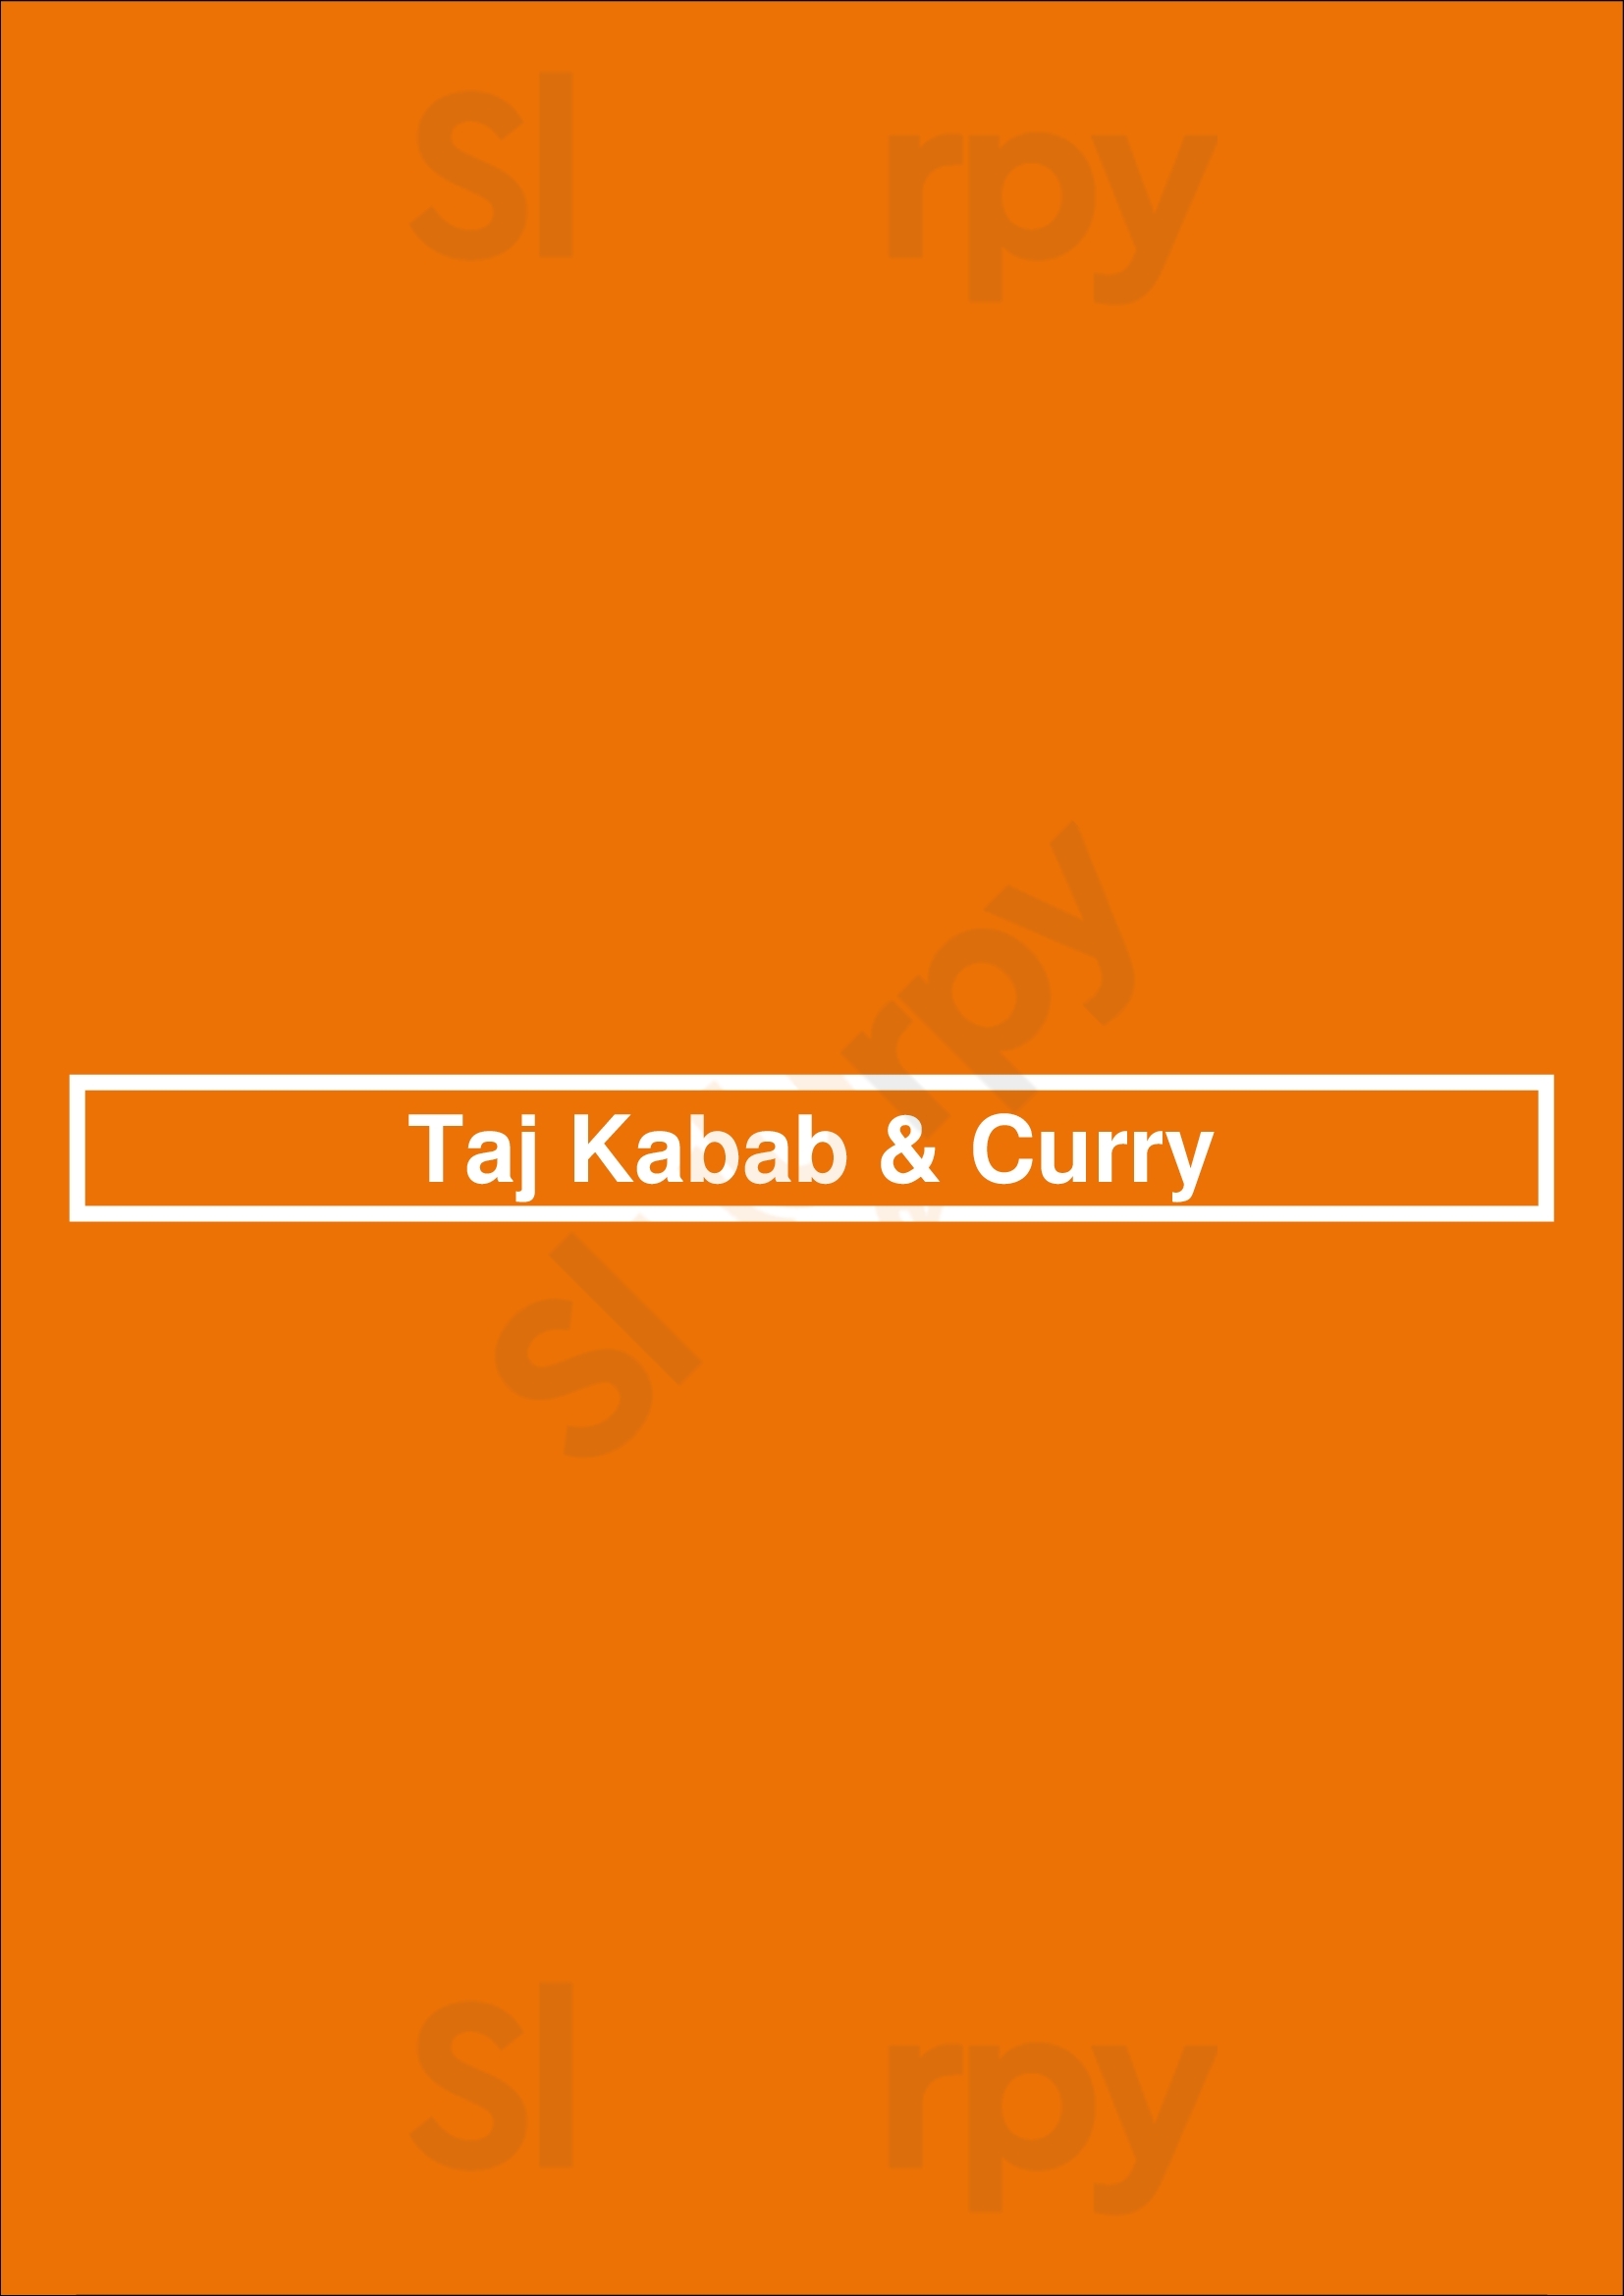 Taj Kabab King Brooklyn Menu - 1